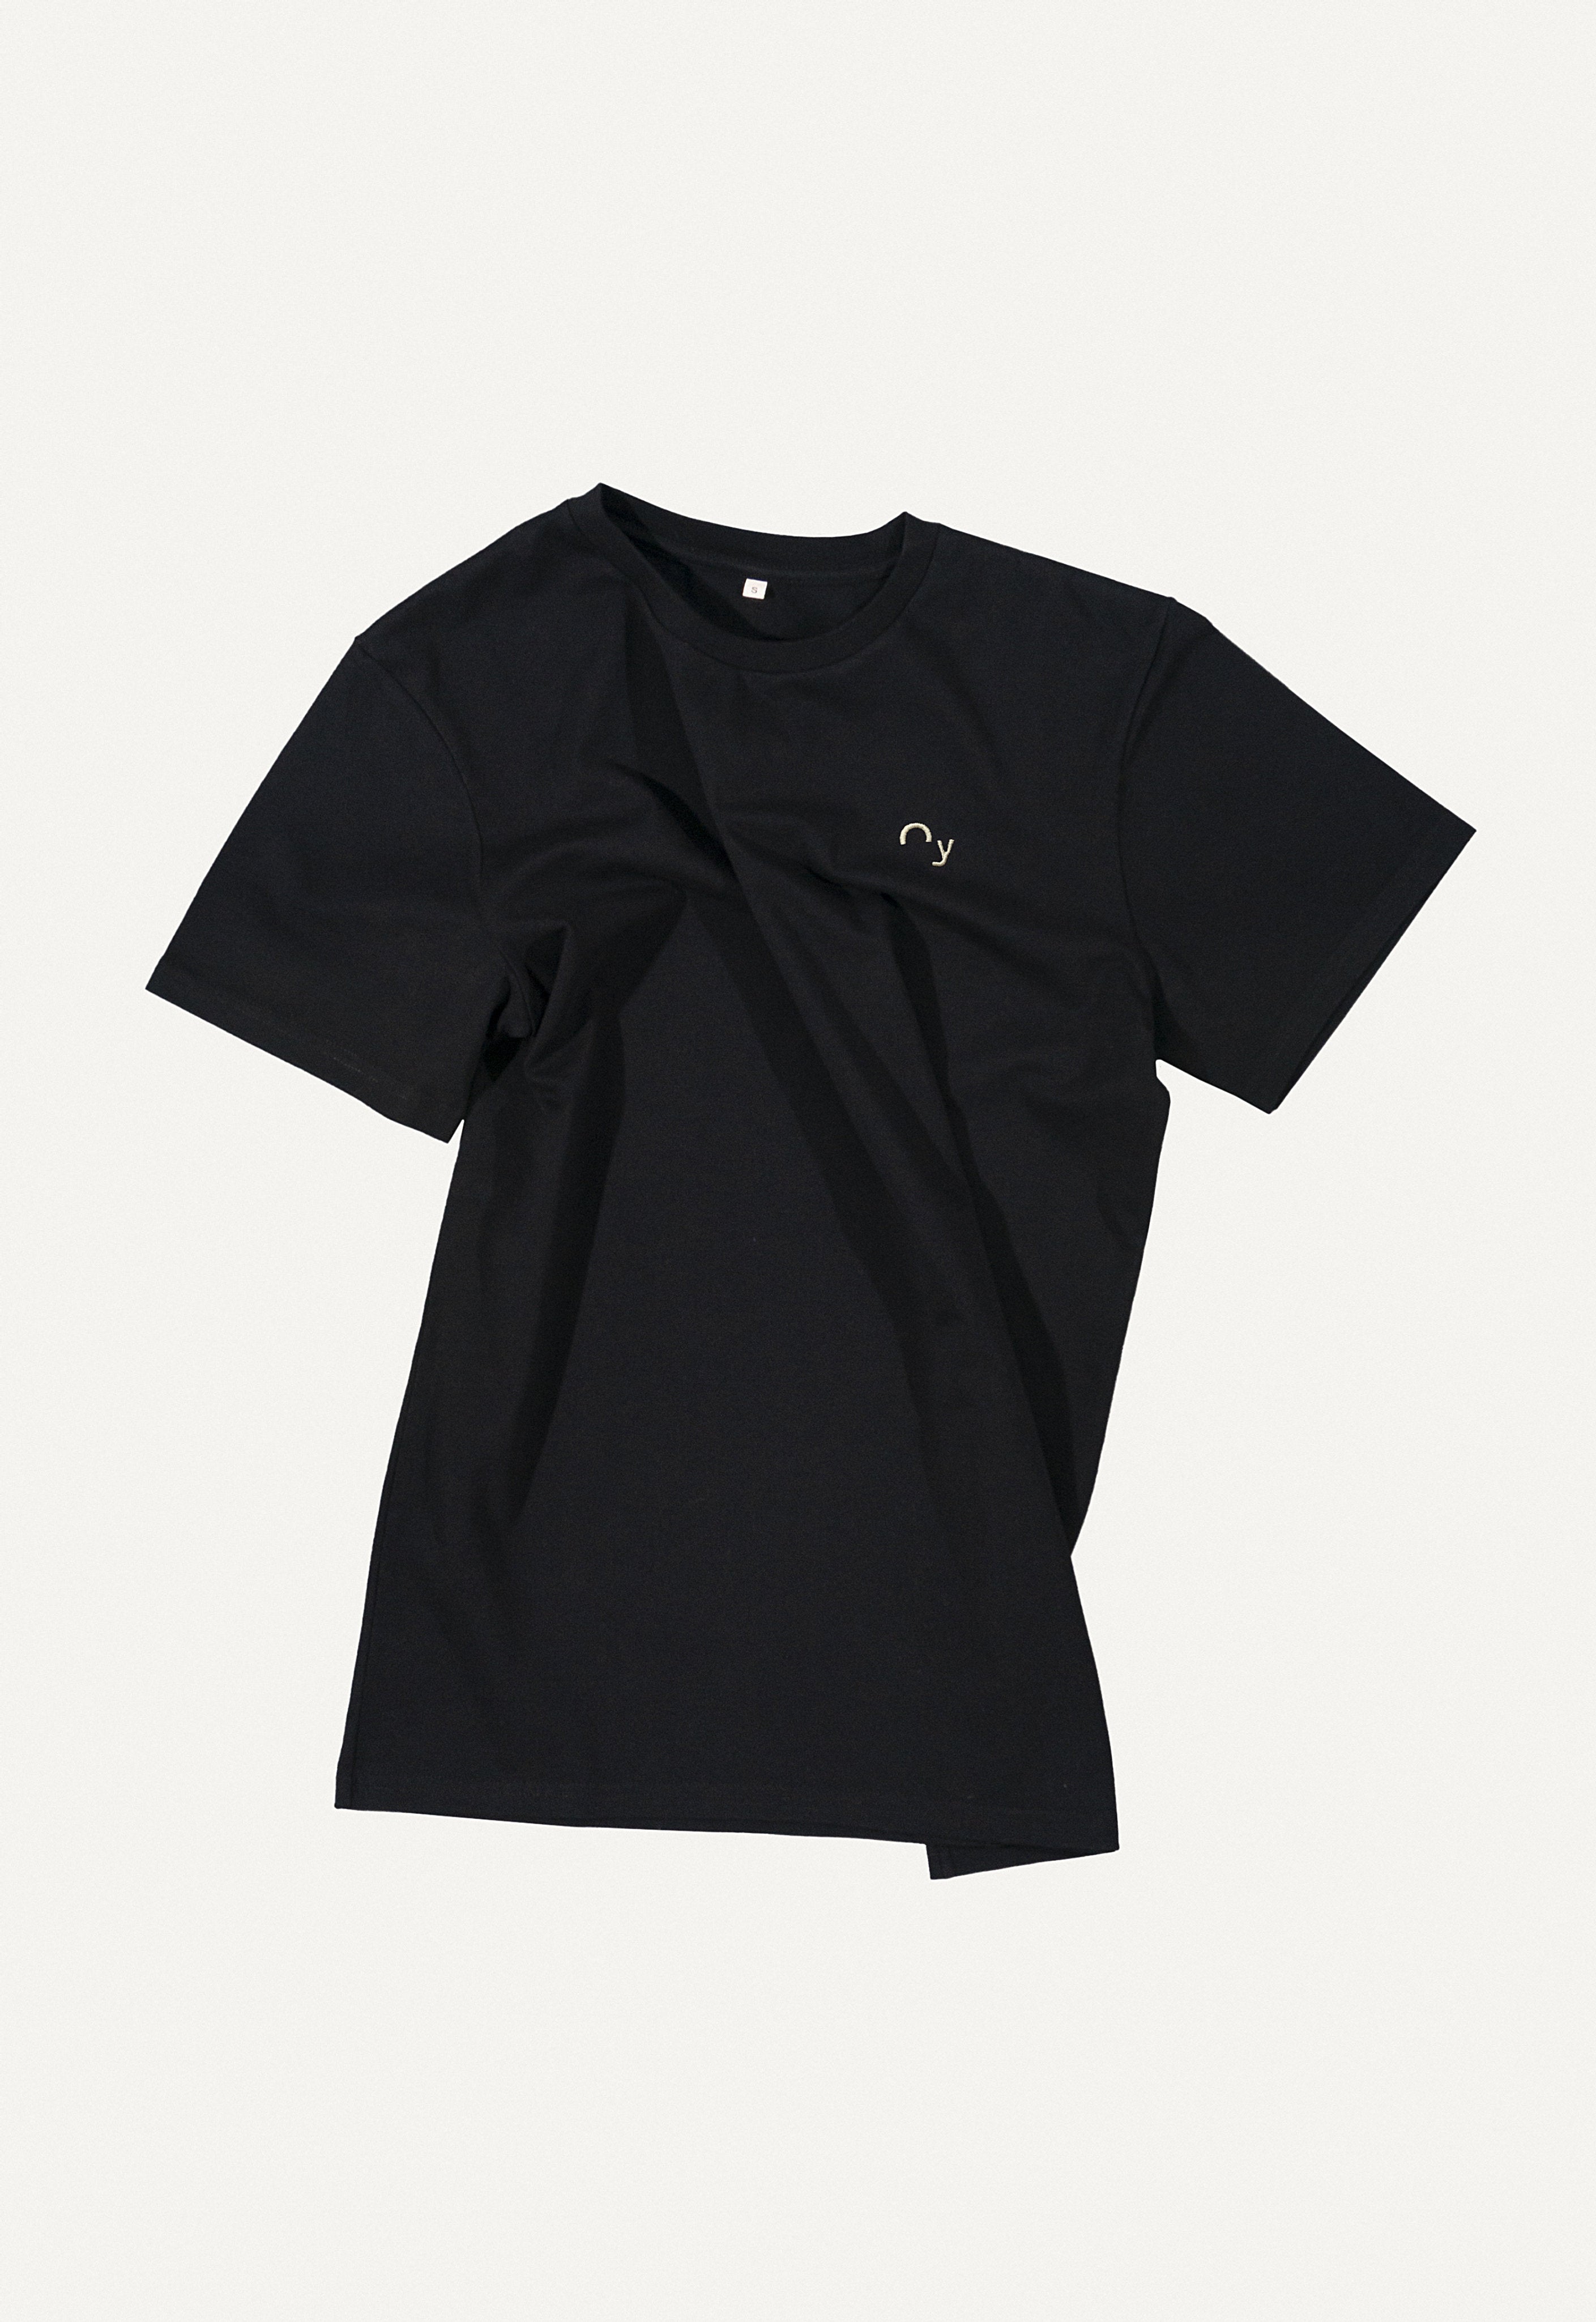 T-Shirt Unisex „Oy“ in Schwarz